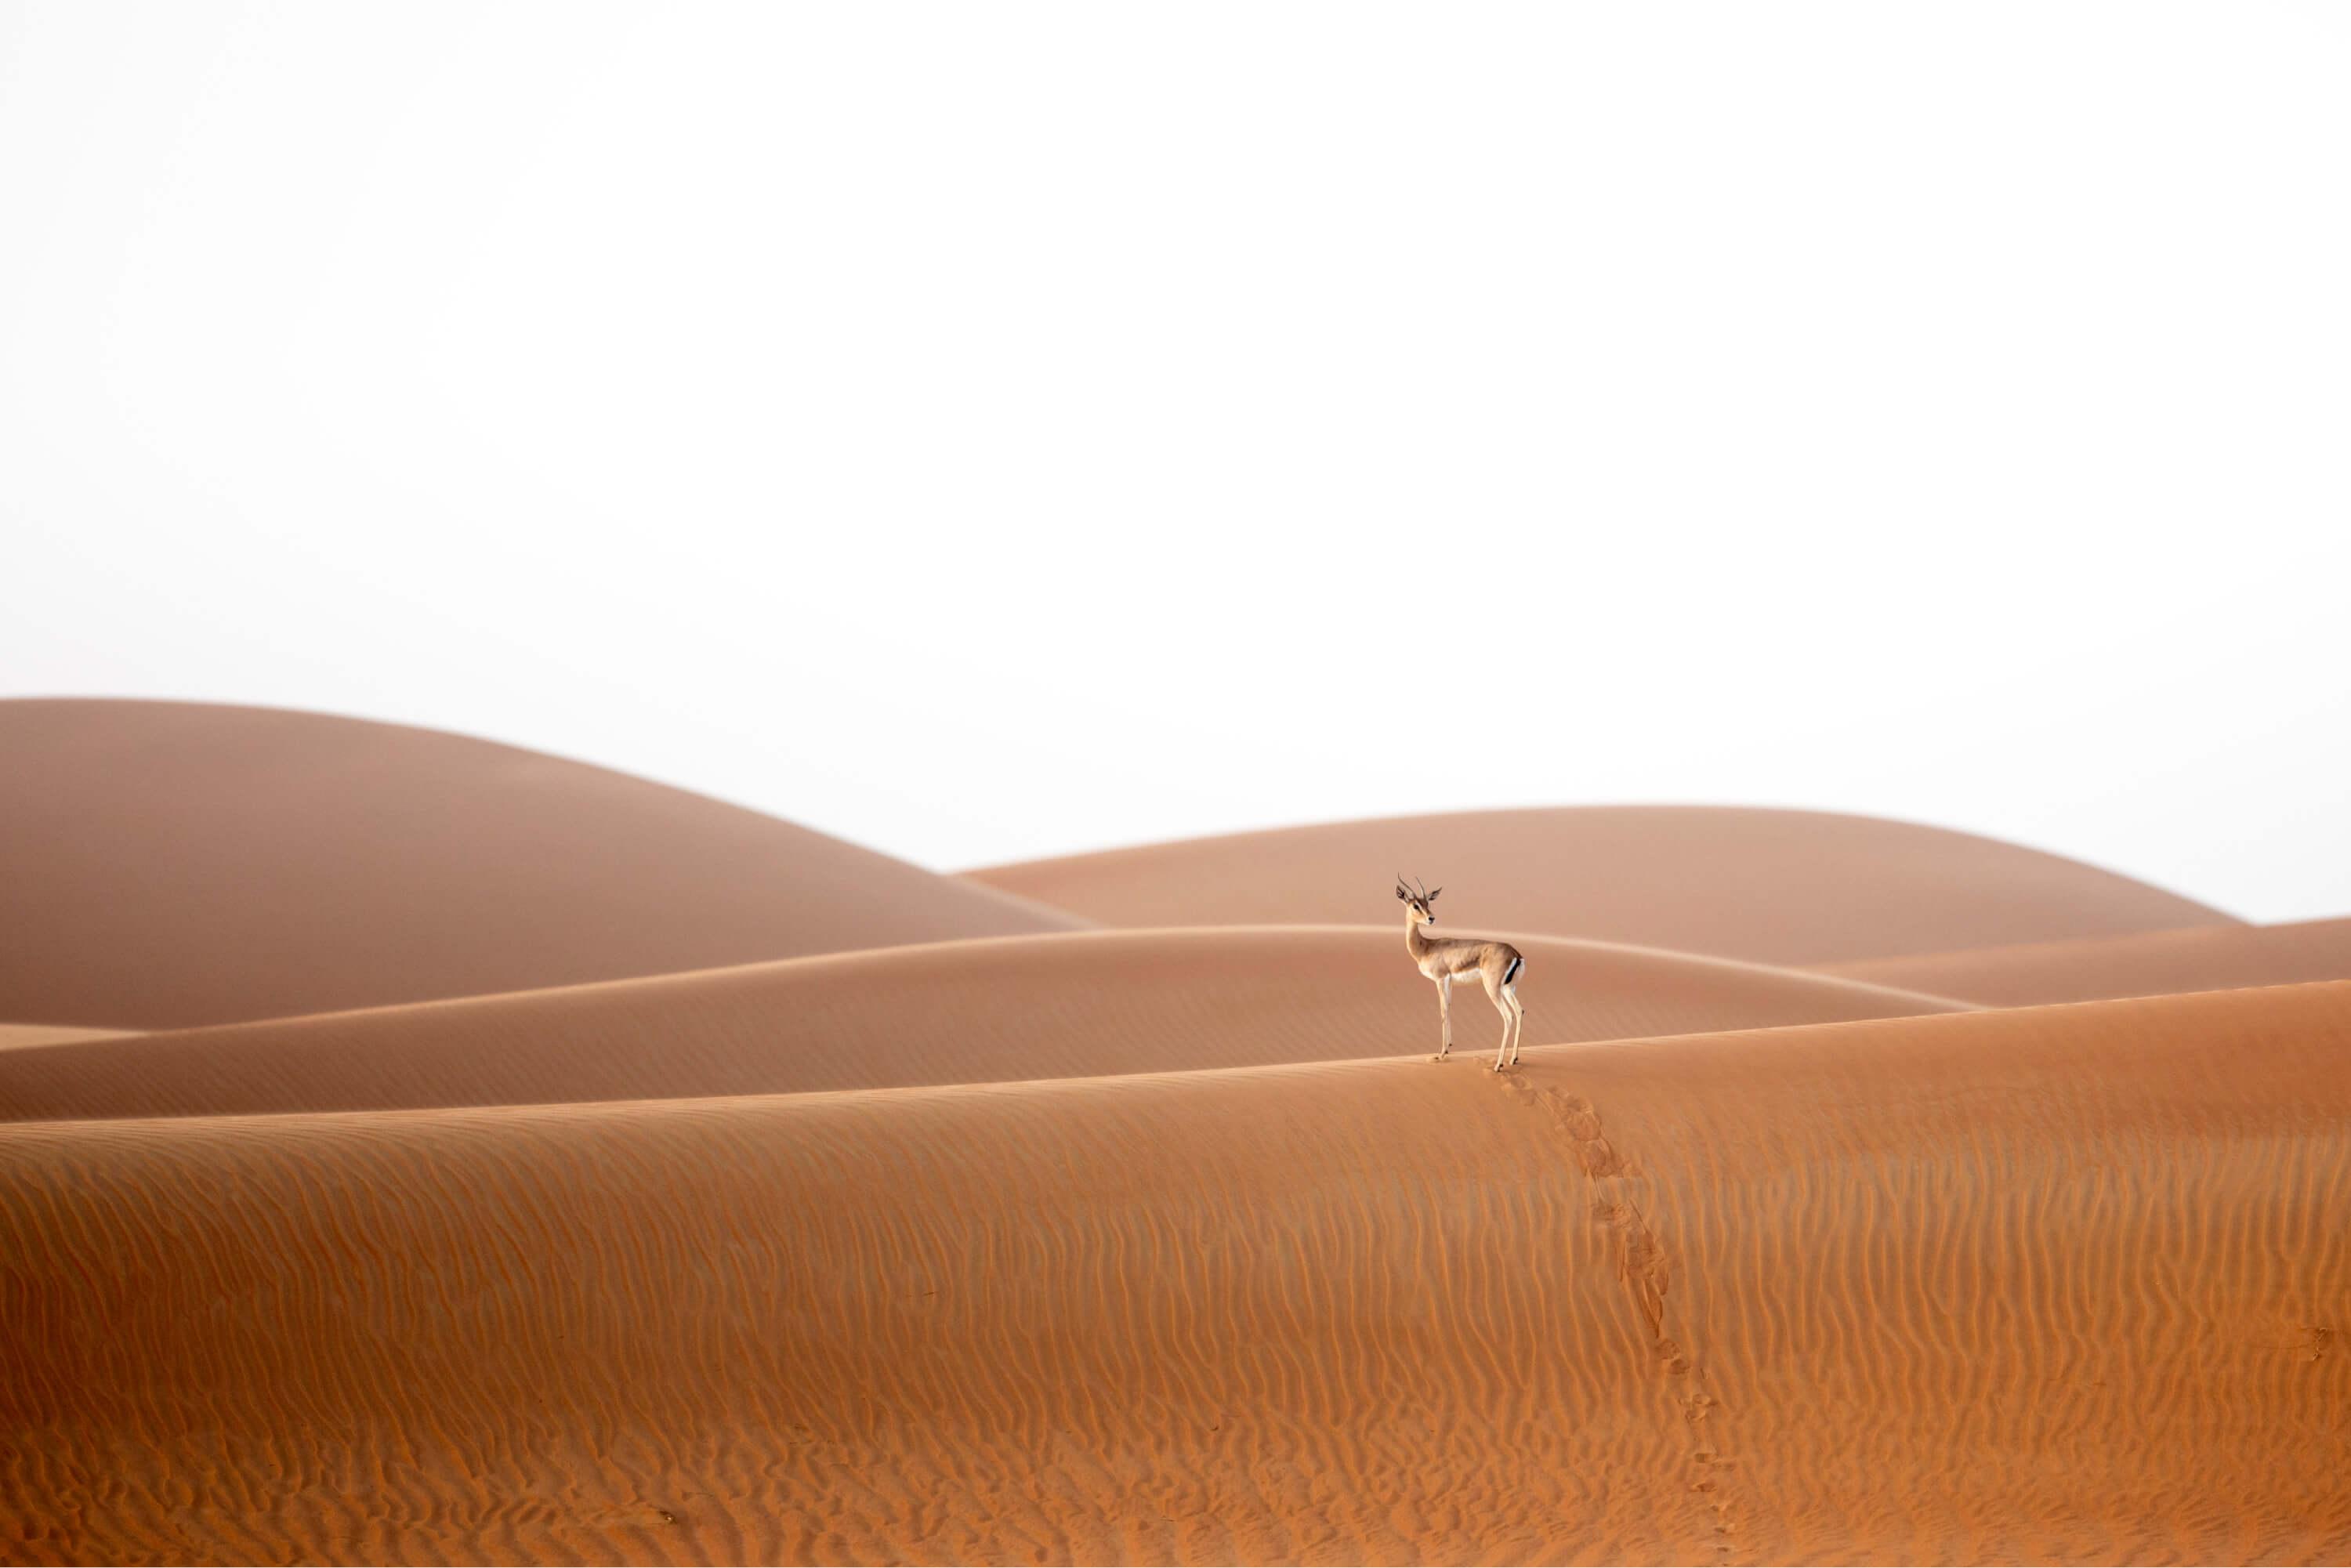  غزال الريم يشق طريقه عبر الكثبان الرملية الحمراء بصحراء العين. المصور: حمد الكعبي   الموقع: العين، الإمارات العربية المتحدة